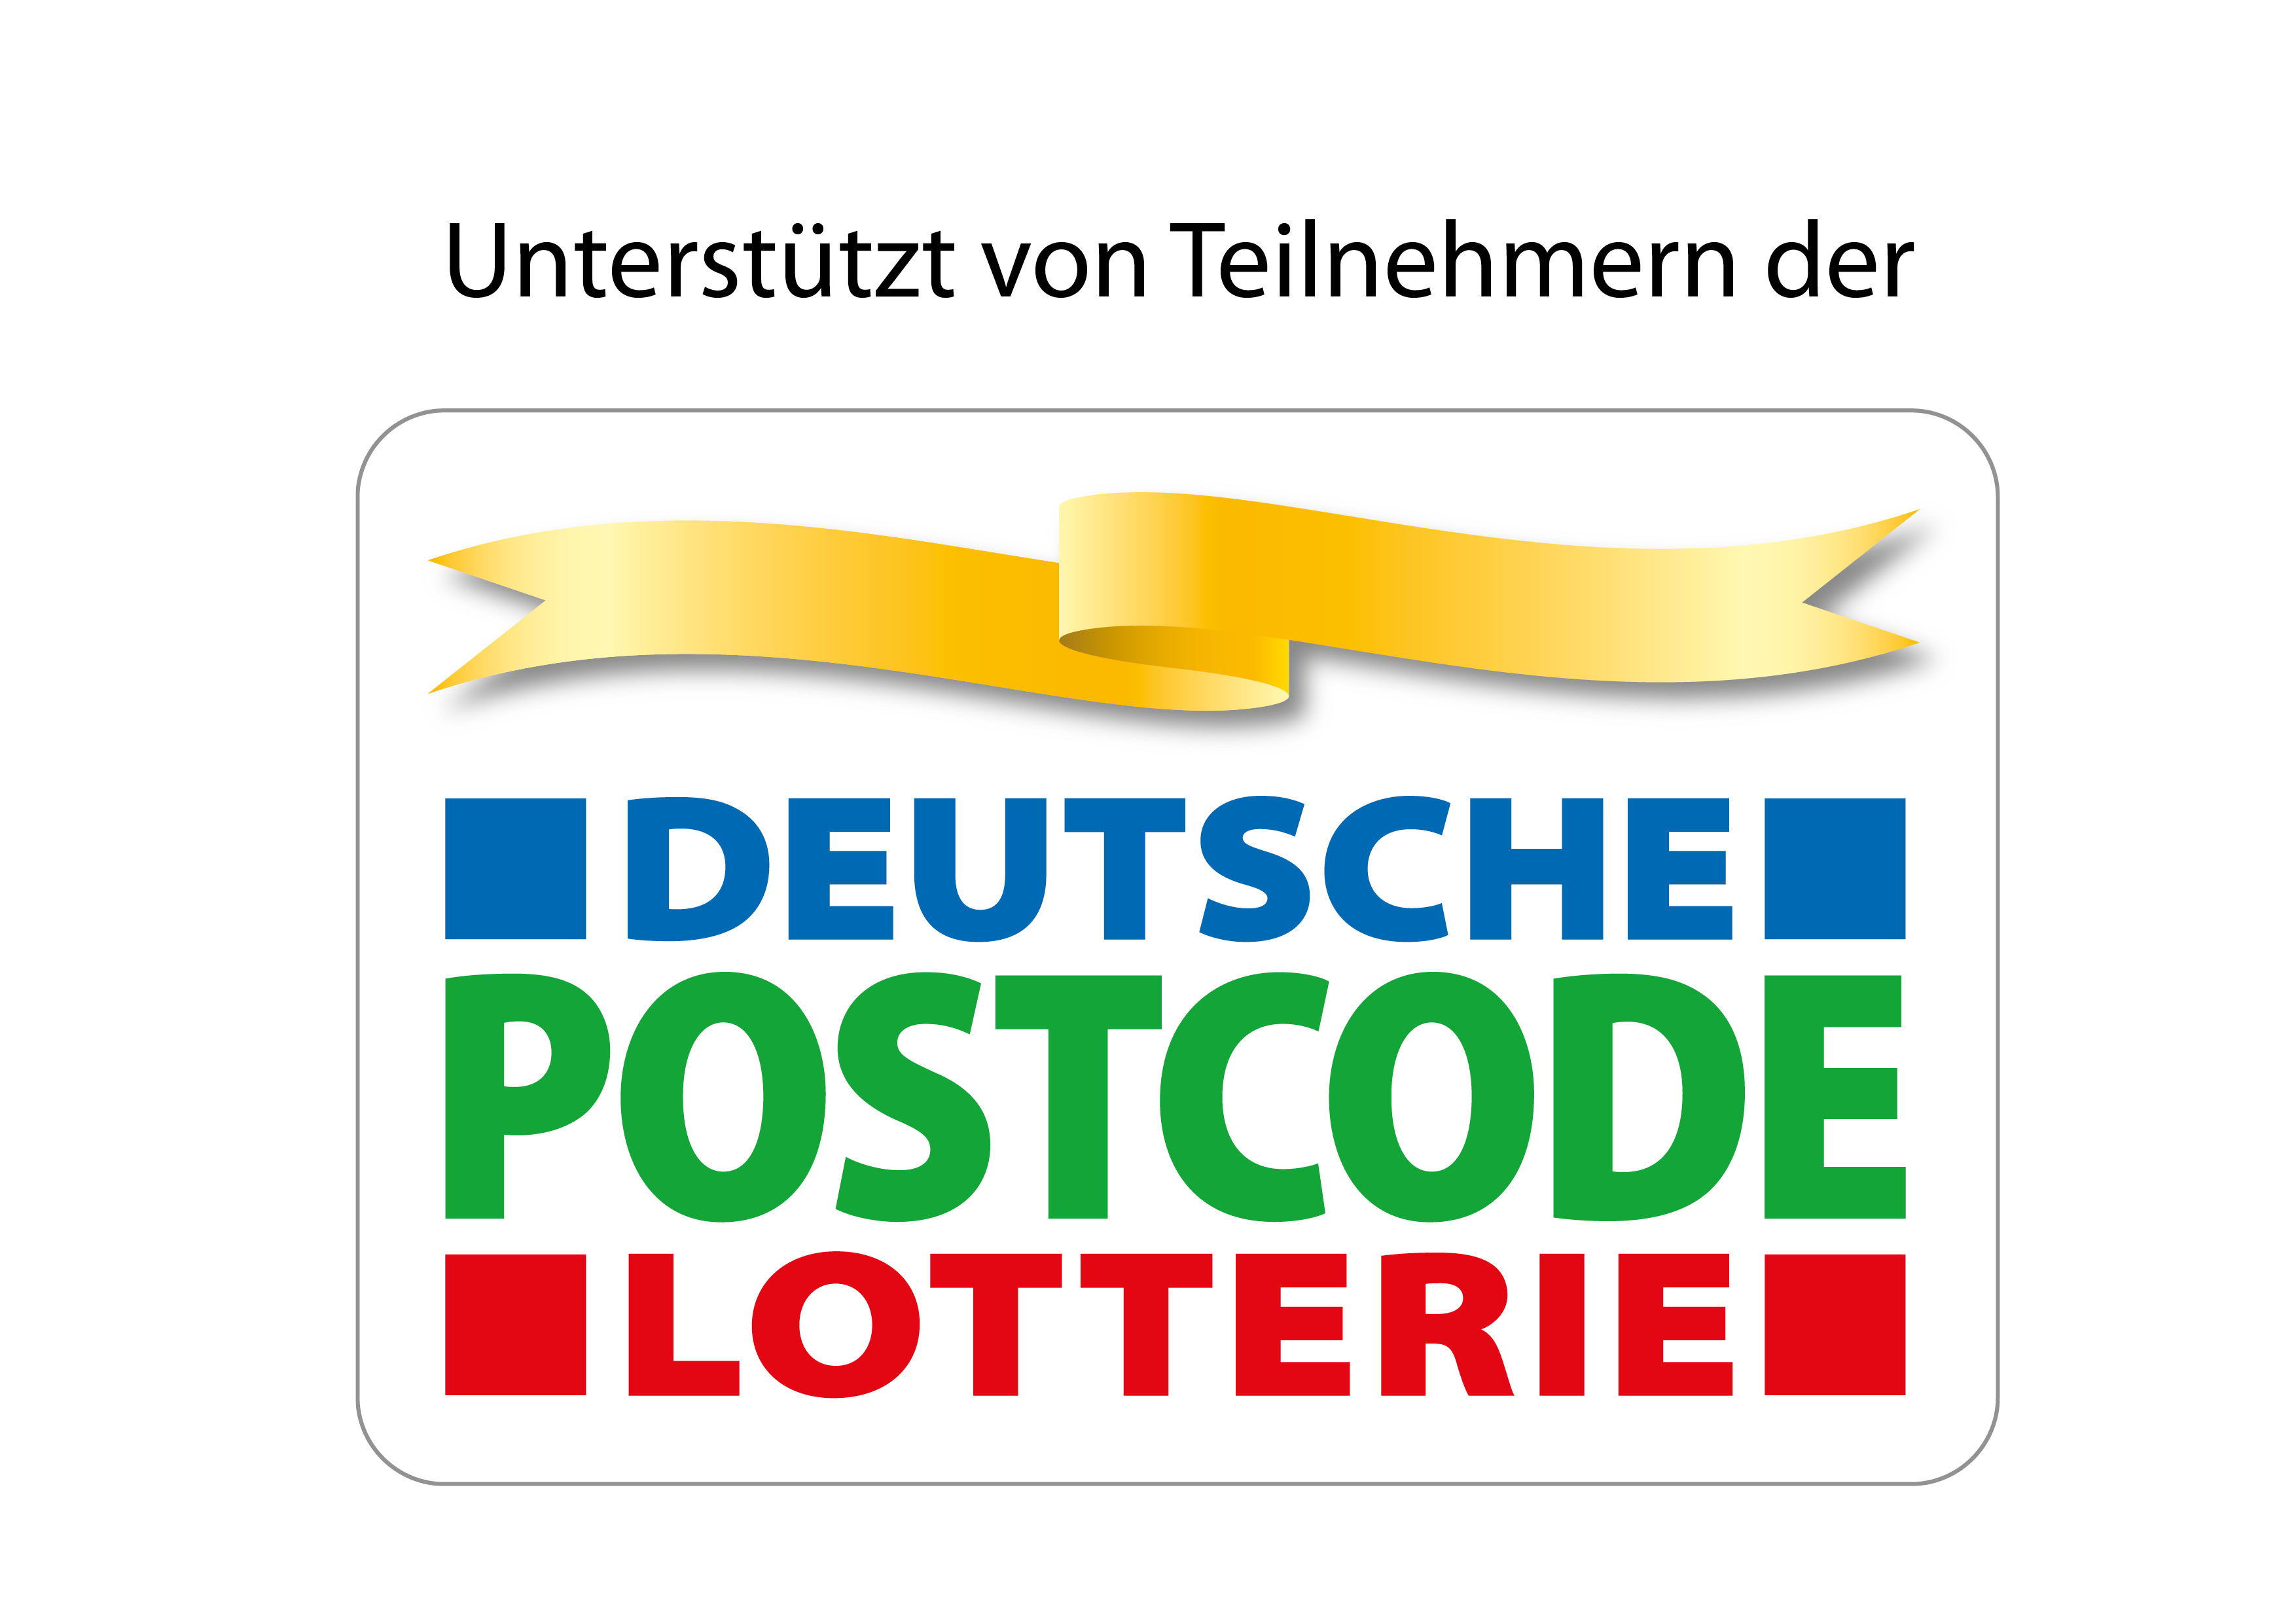 Unterstützt von Teilnehmern der Deutschen Postcode Lotterie